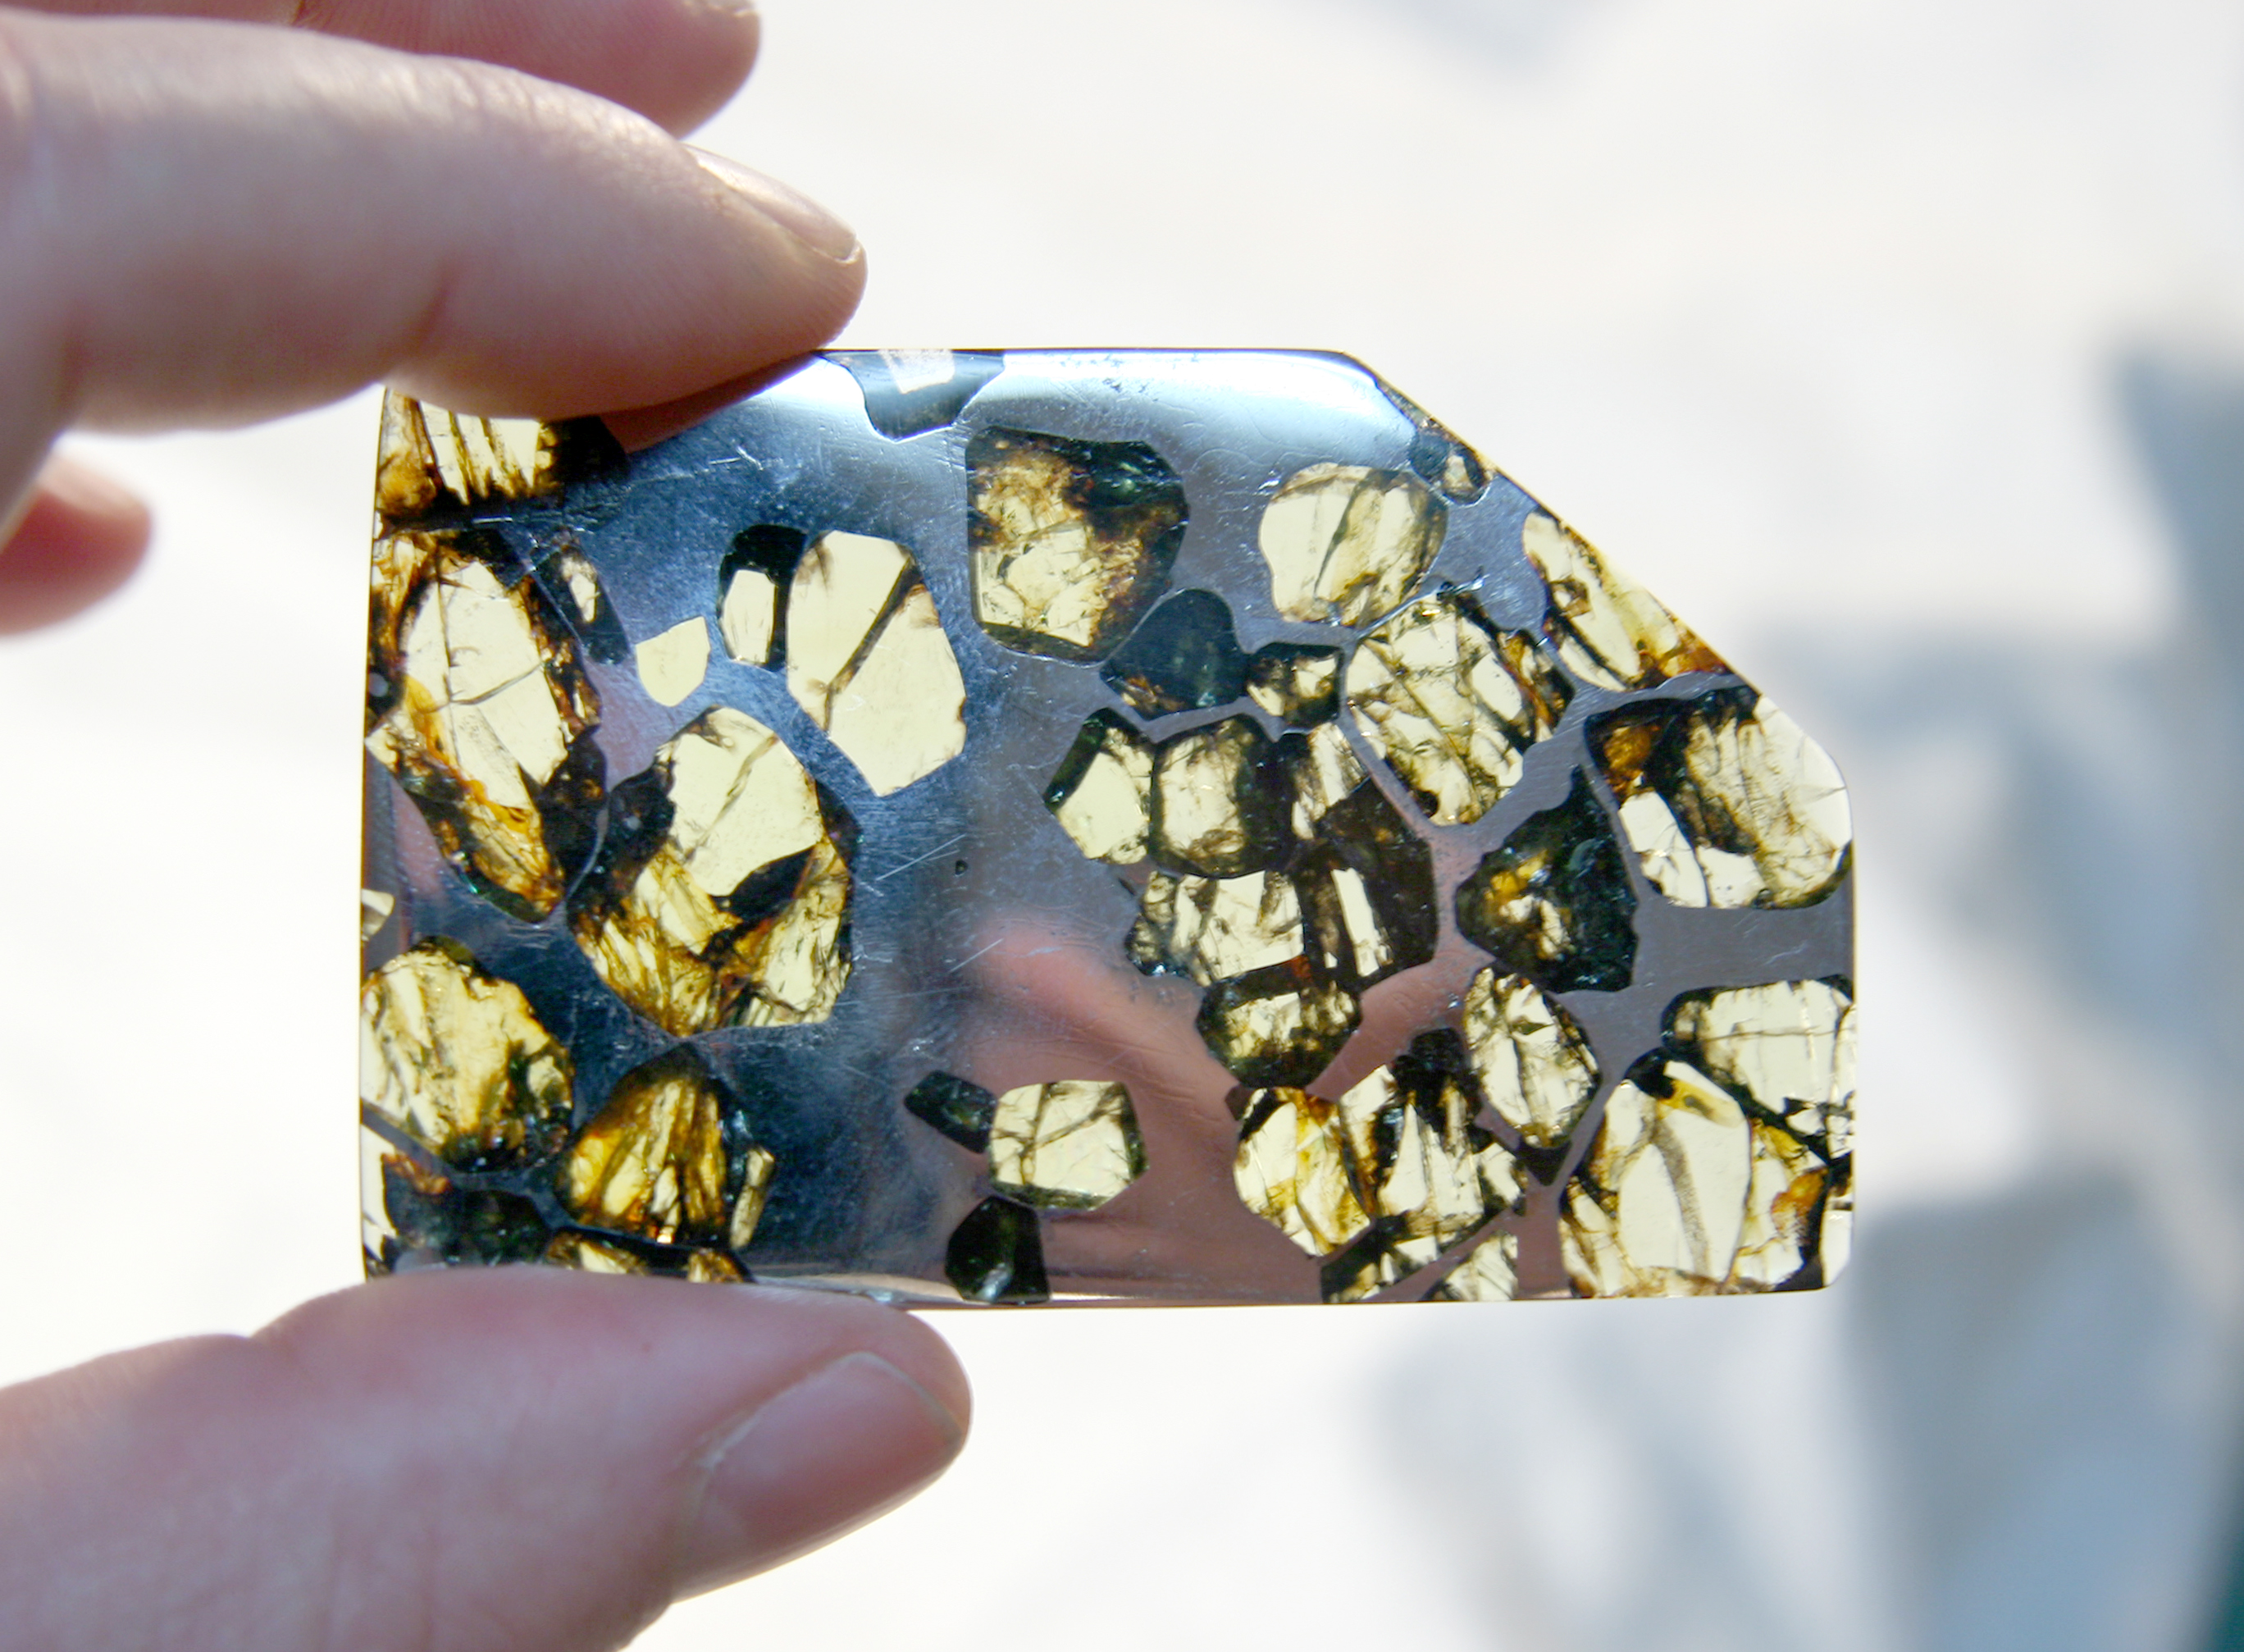 Comment reconnaître une météorite ? Ici, un fragment de la météorite Esquel. Il s'agit d'une pallasite trouvée en 1951 dans la province de Chubut, en Argentine. © Doug Bowman, Wikimedia Commons, CC by 2.0